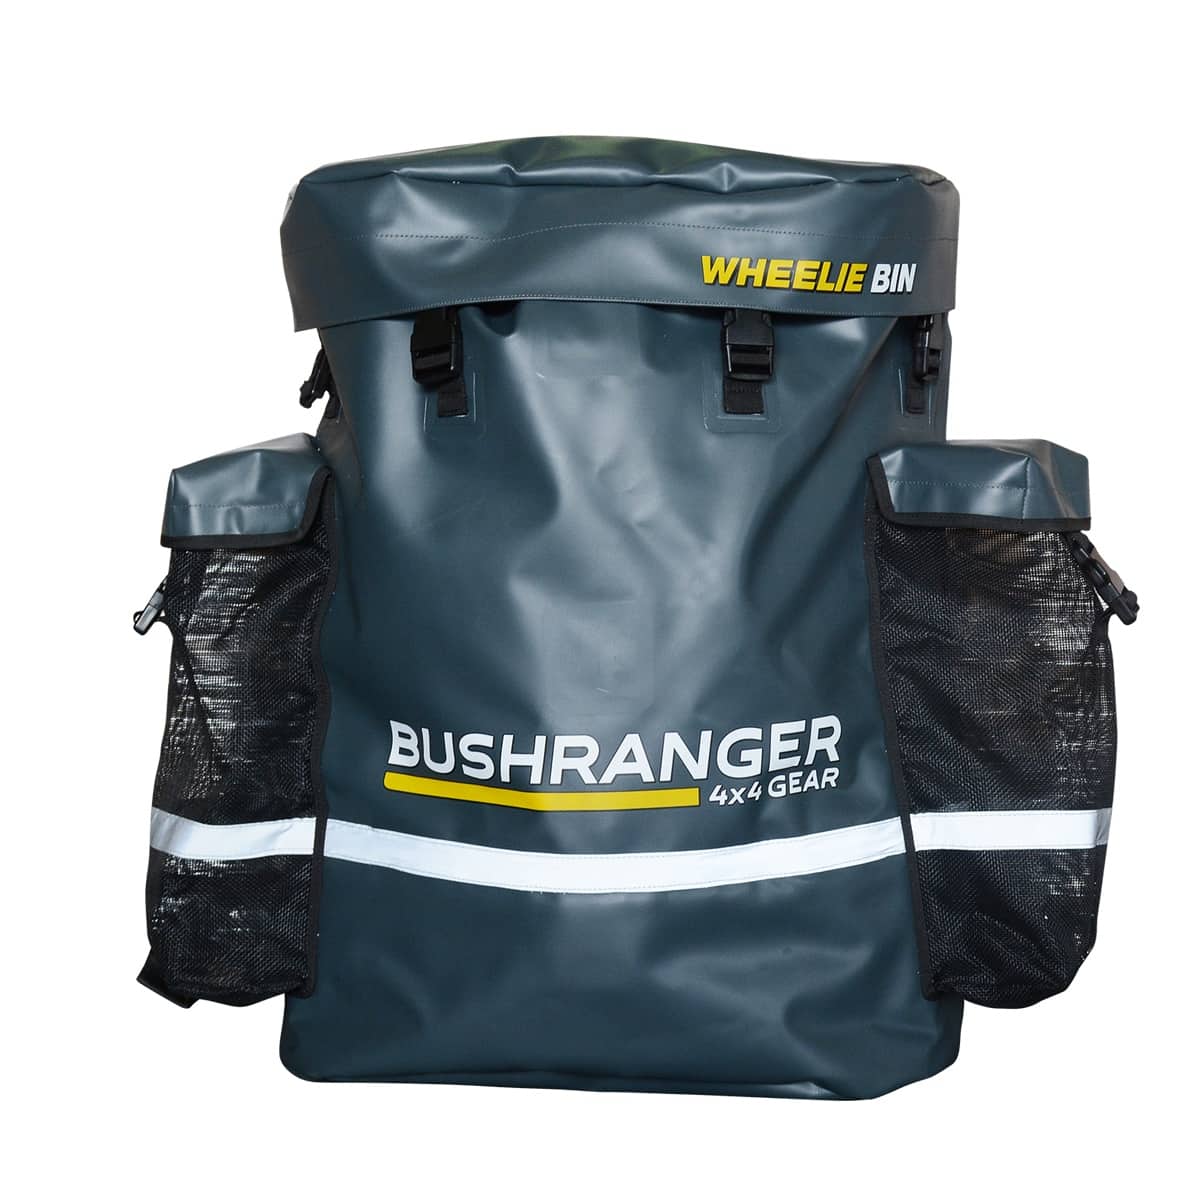 Bushranger 4WD WHEELIE BIN | Bushranger 4x4 | A247 Gear